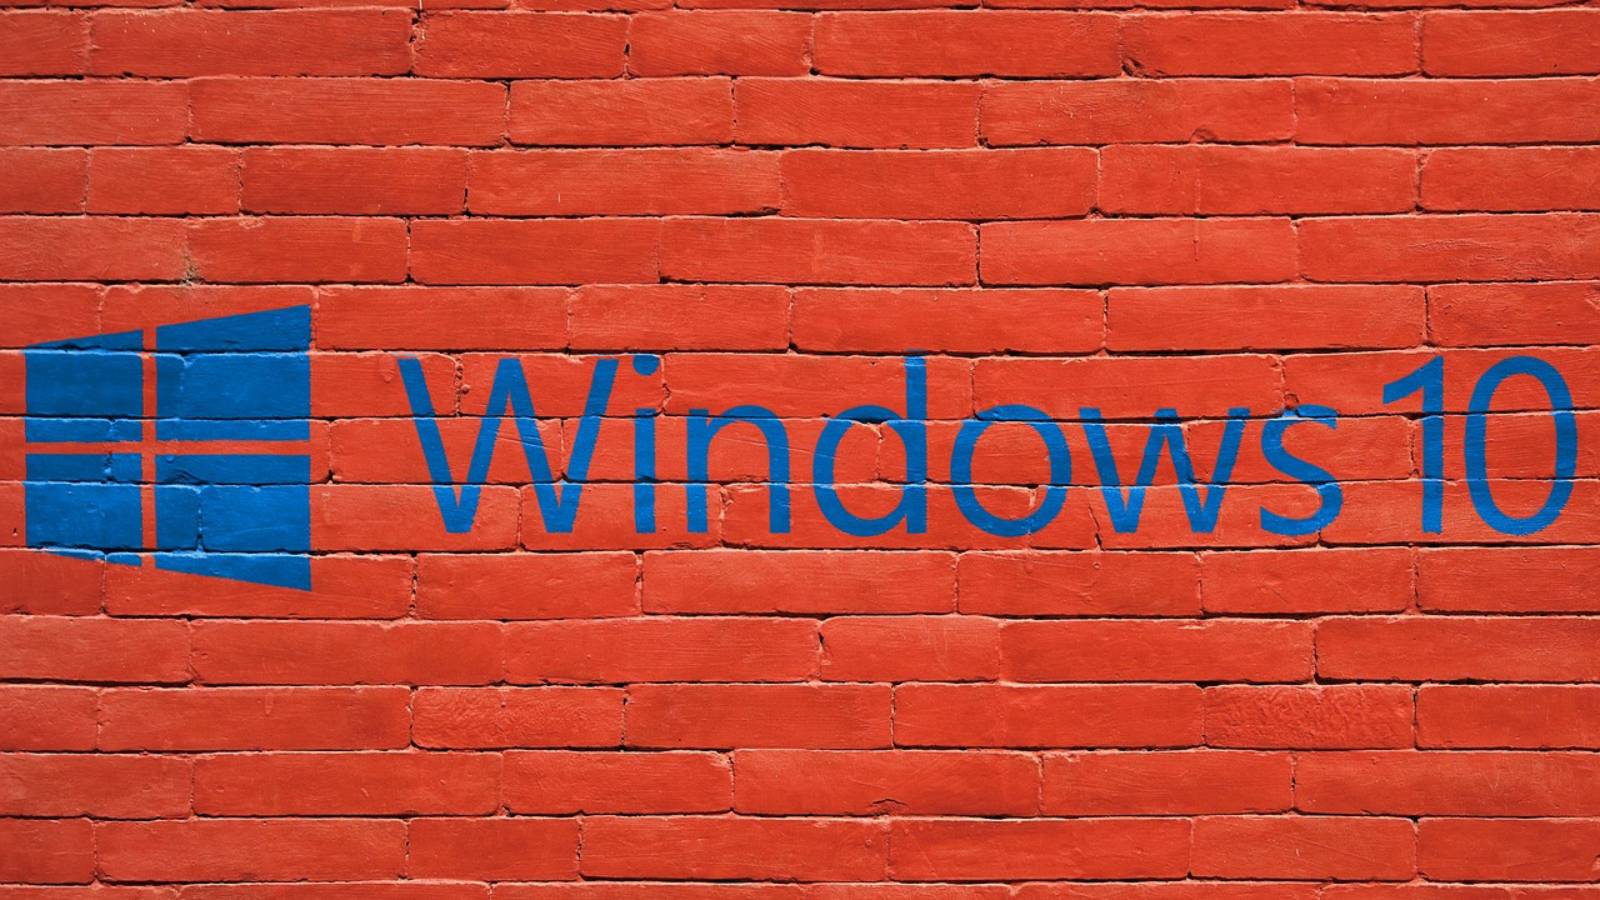 Windows 10 nieuws Oktober 2019-update